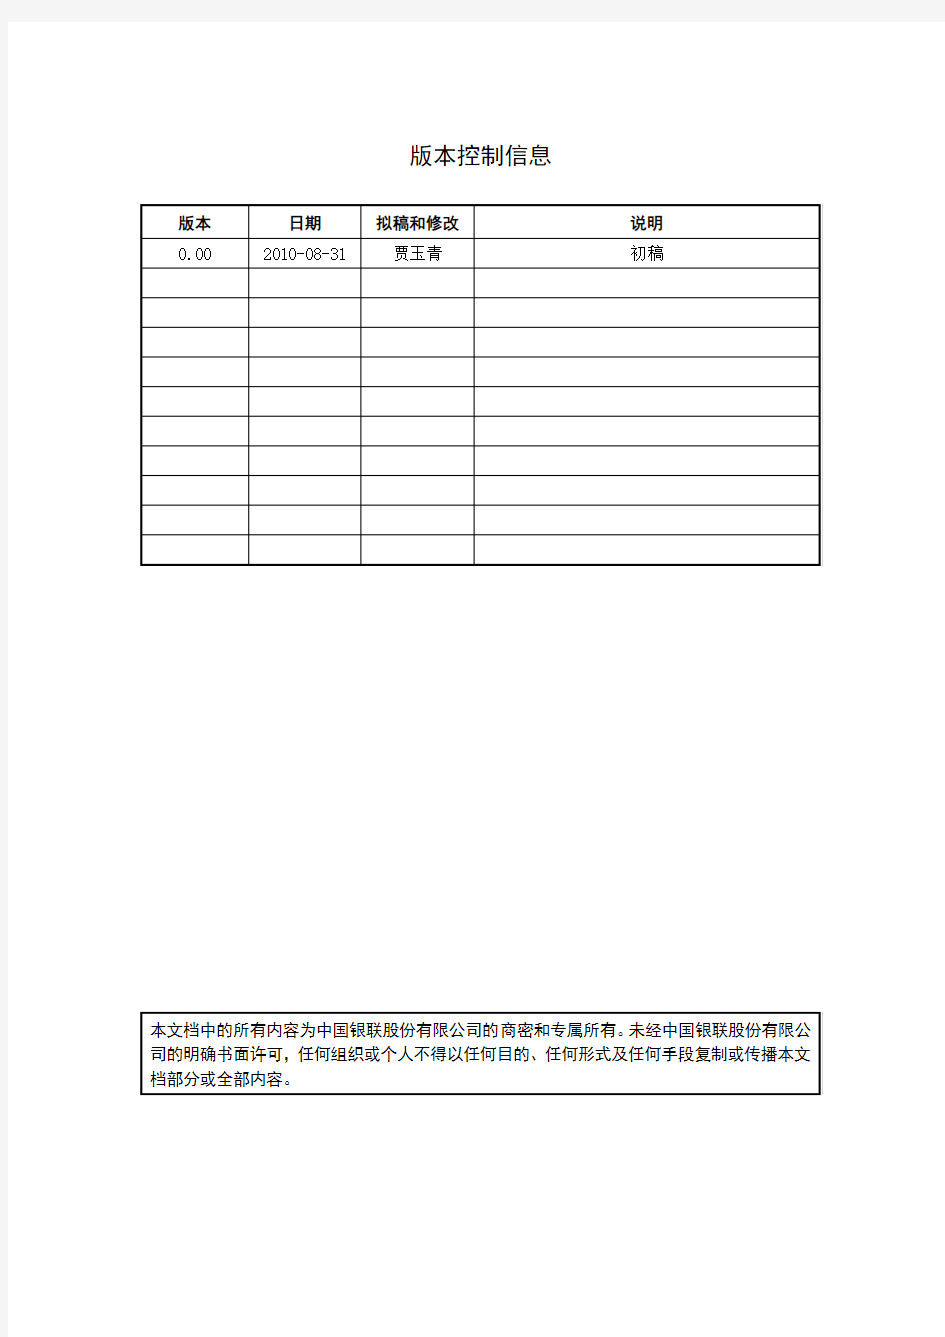 中国银联商户服务平台用户操作手册(机构版)